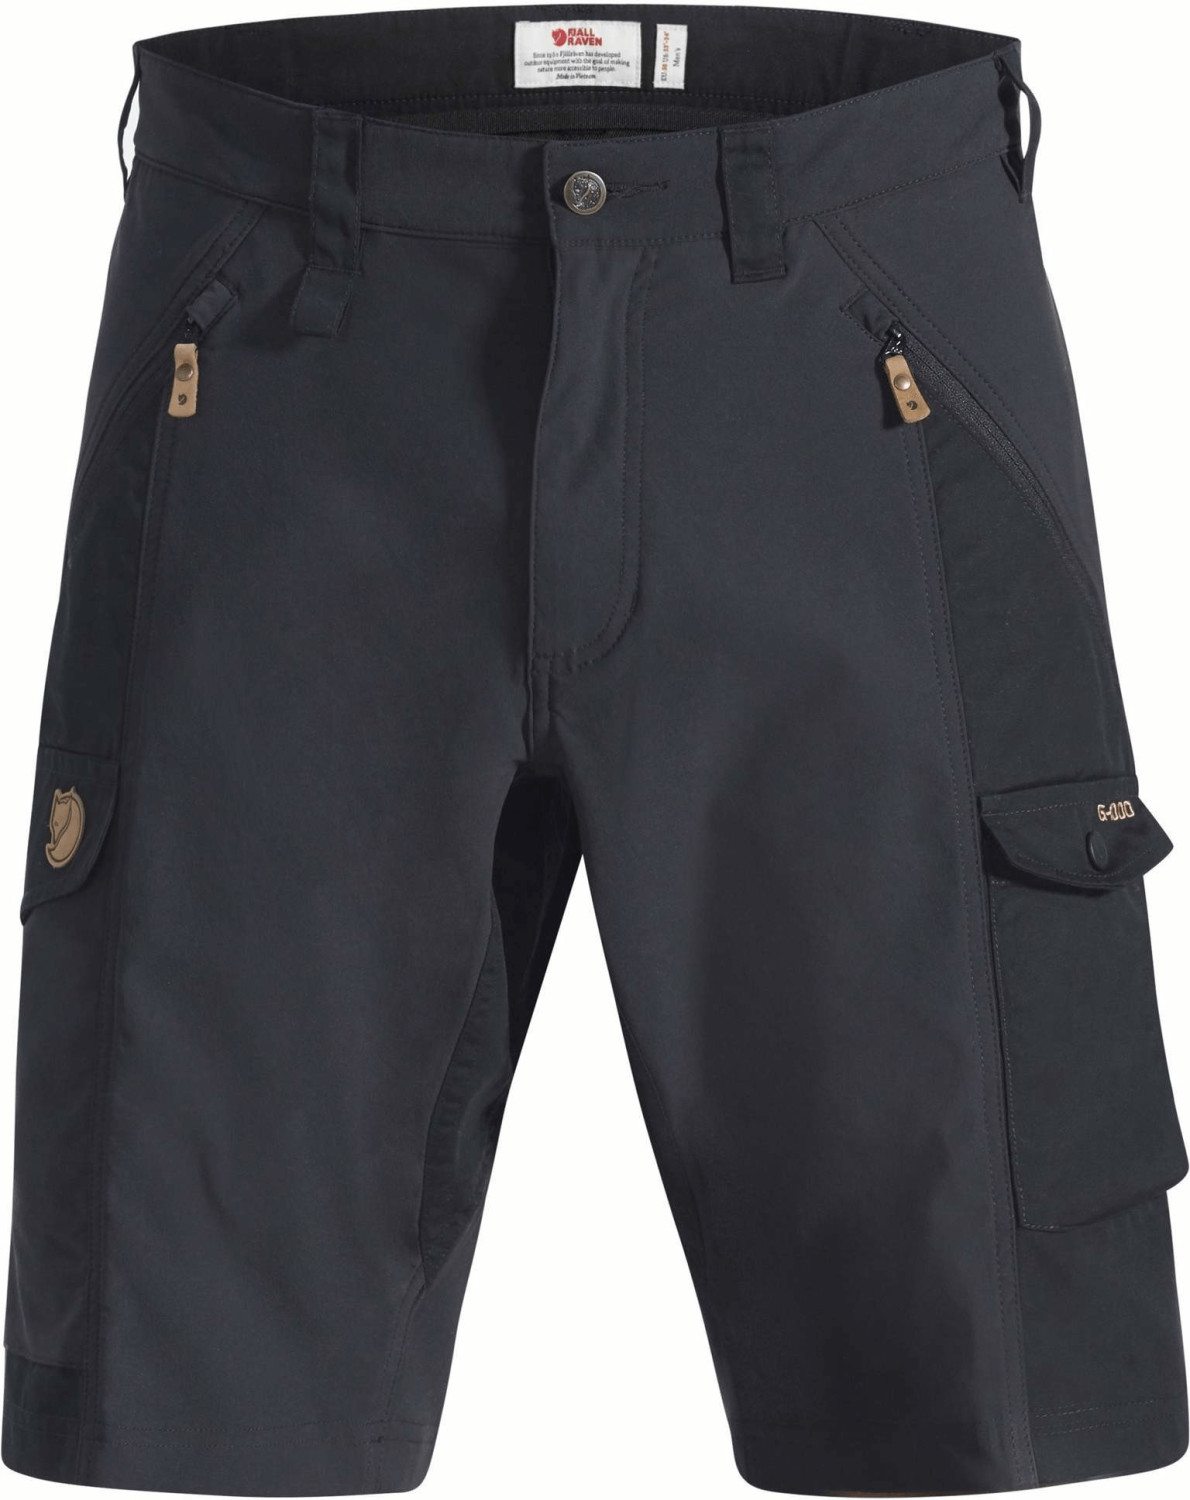 Buy Fjällräven Abisko Shorts M (82833) black from £71.71 (Today) – Best ...